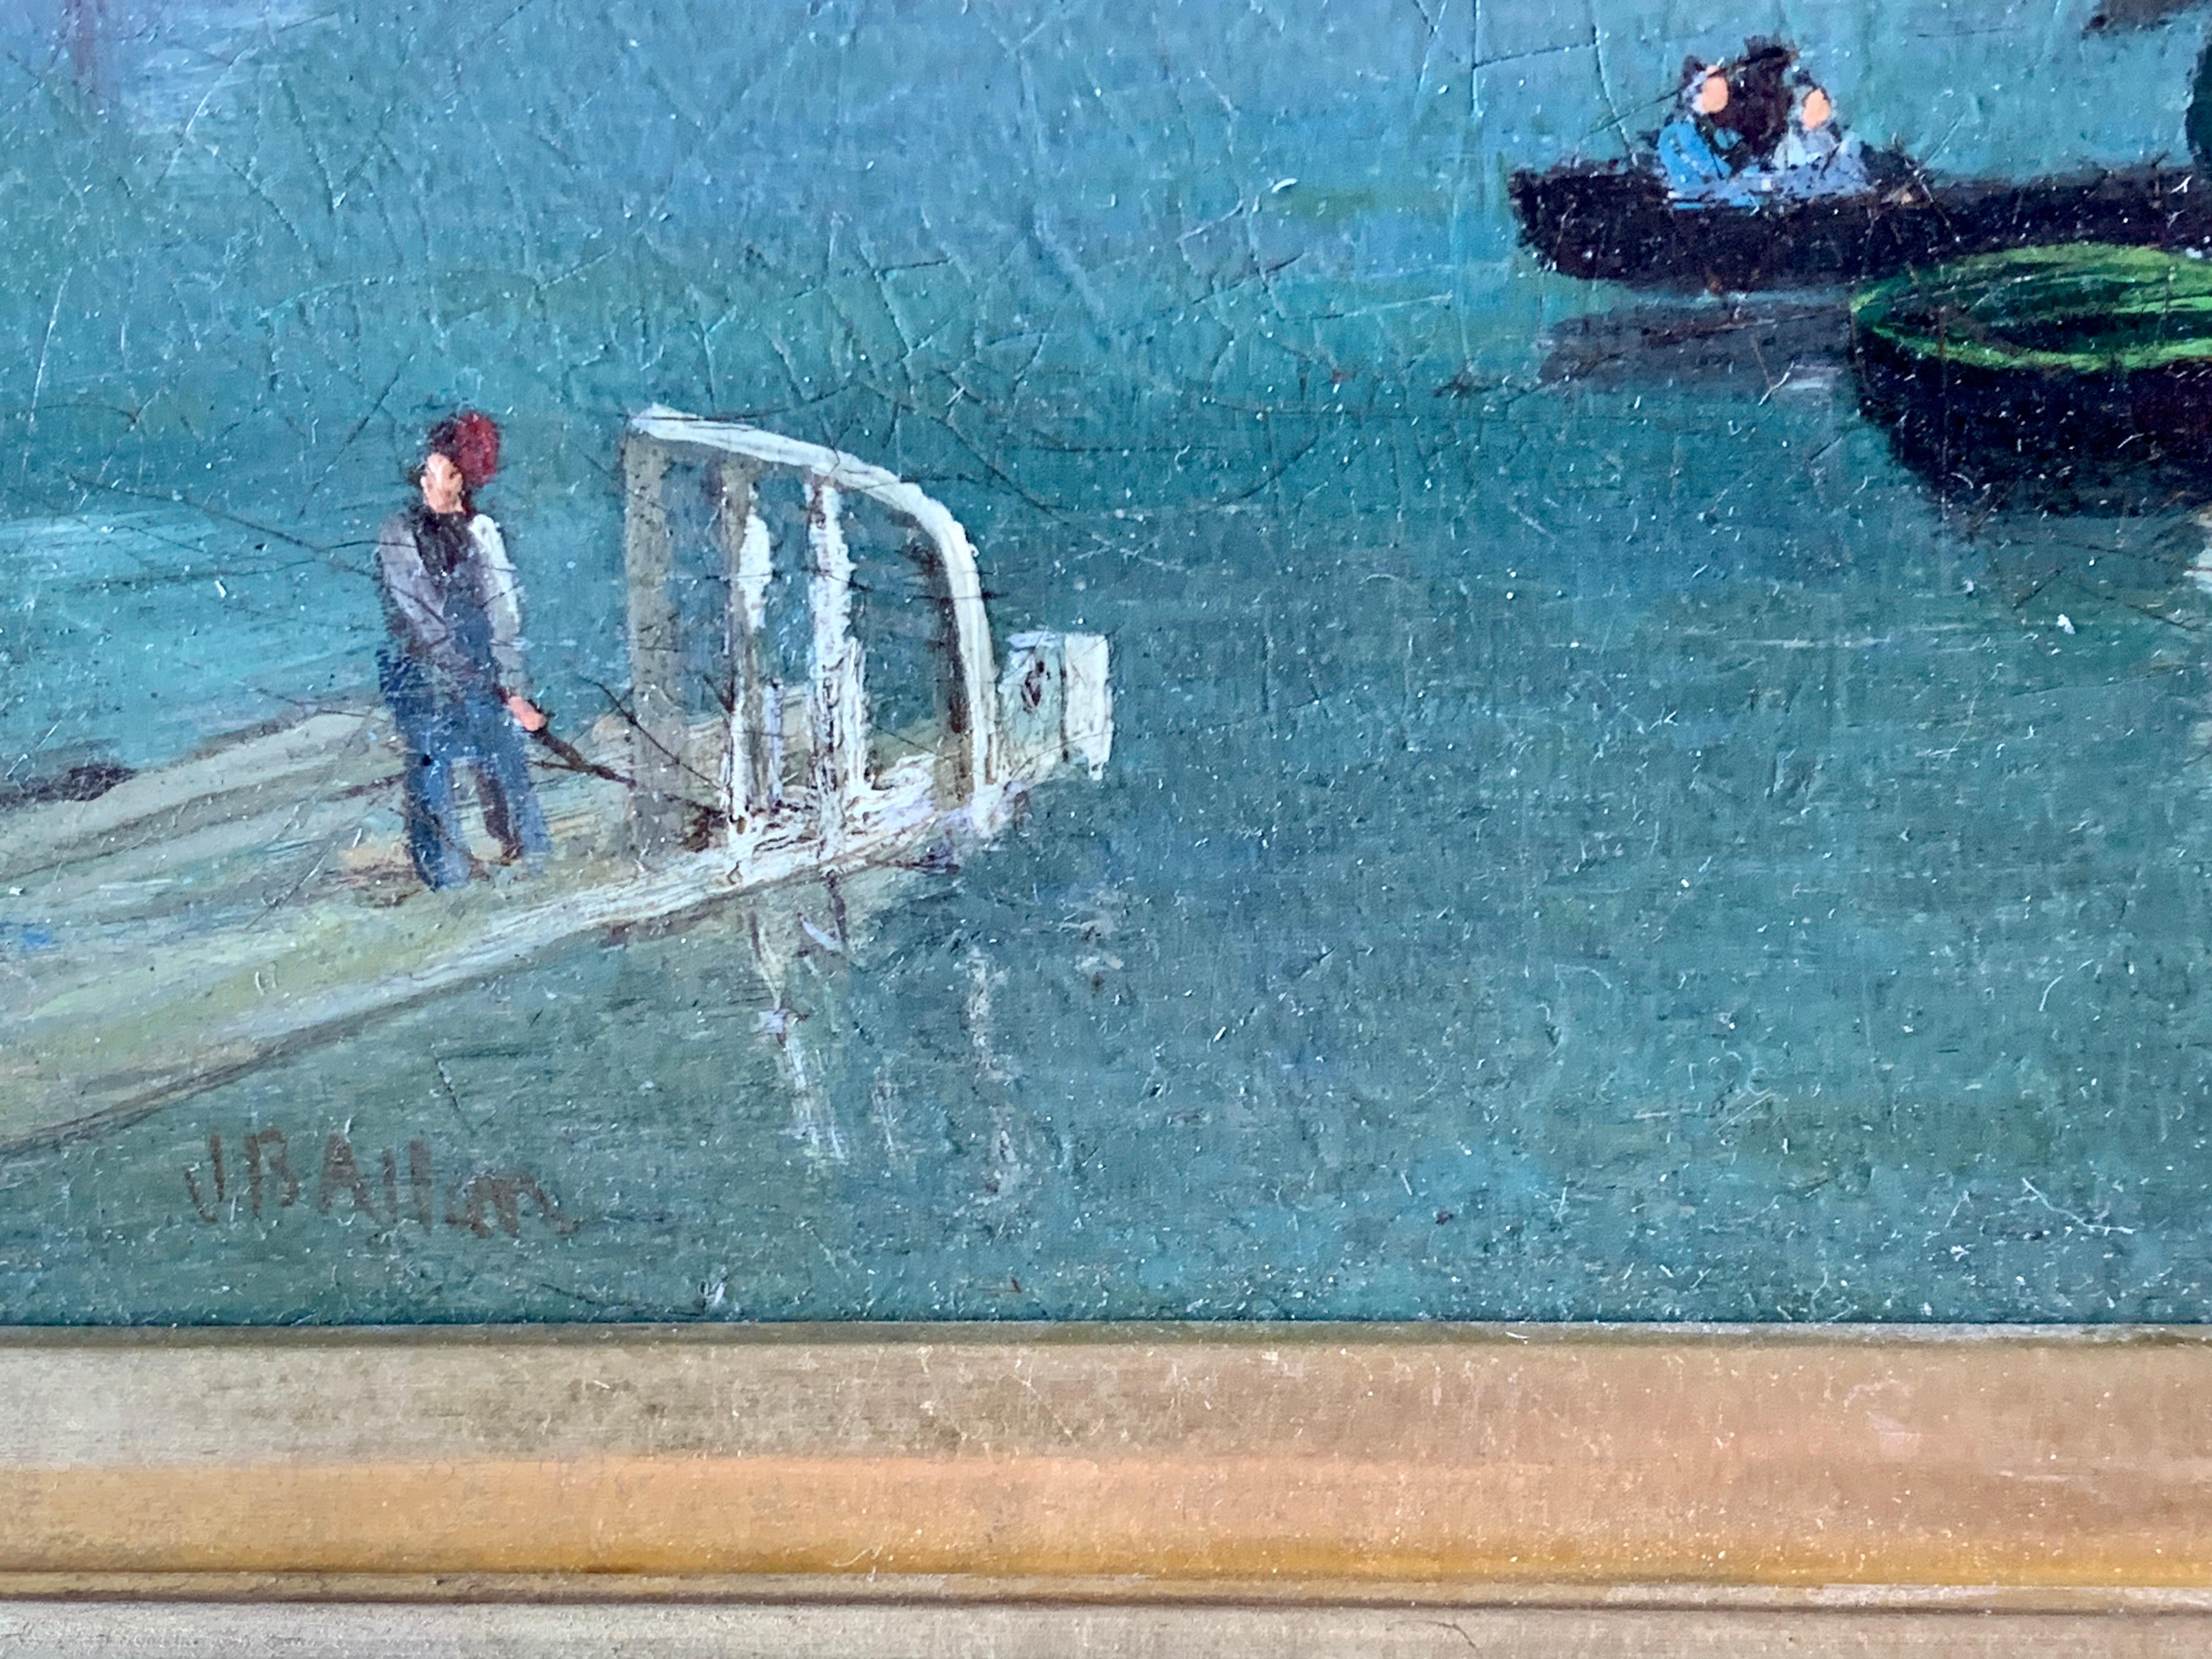 Très joli paysage fluvial anglais du 19e siècle avec des voiliers, un bateau à vapeur à pagaies et un équipage qui rame.

Peut-être une vue de la Tamise à Londres, cette pièce a un aspect d'art populaire plutôt que d'être peinte par un artiste